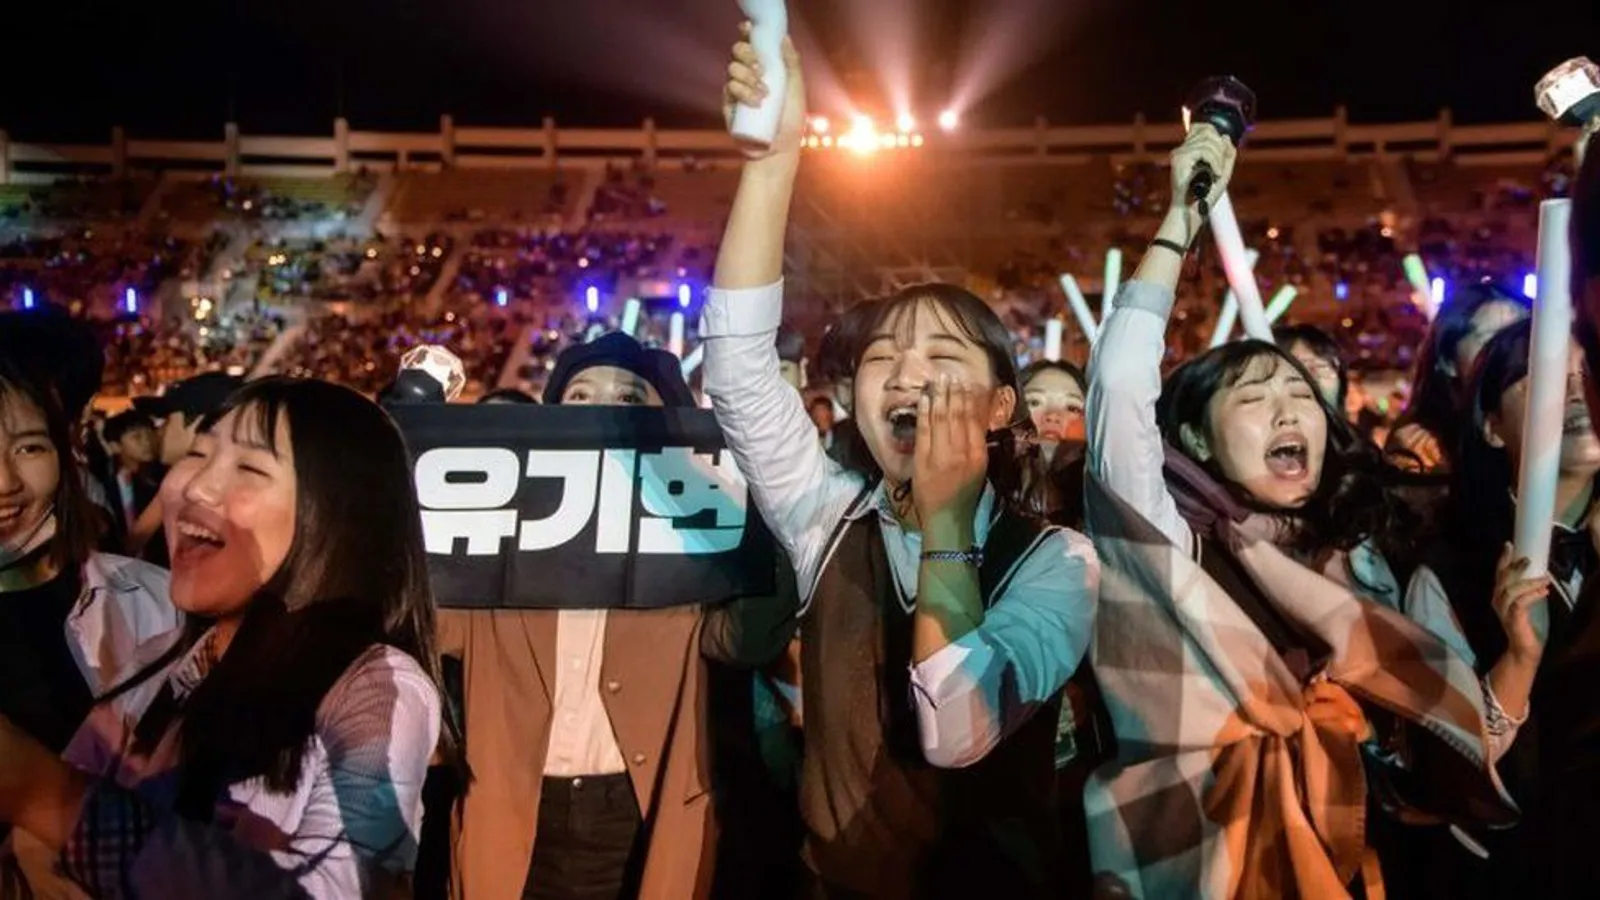 Curhat Mantan Trainee yang Merasa Jijik, Ini Sisi Gelap Industri K-Pop